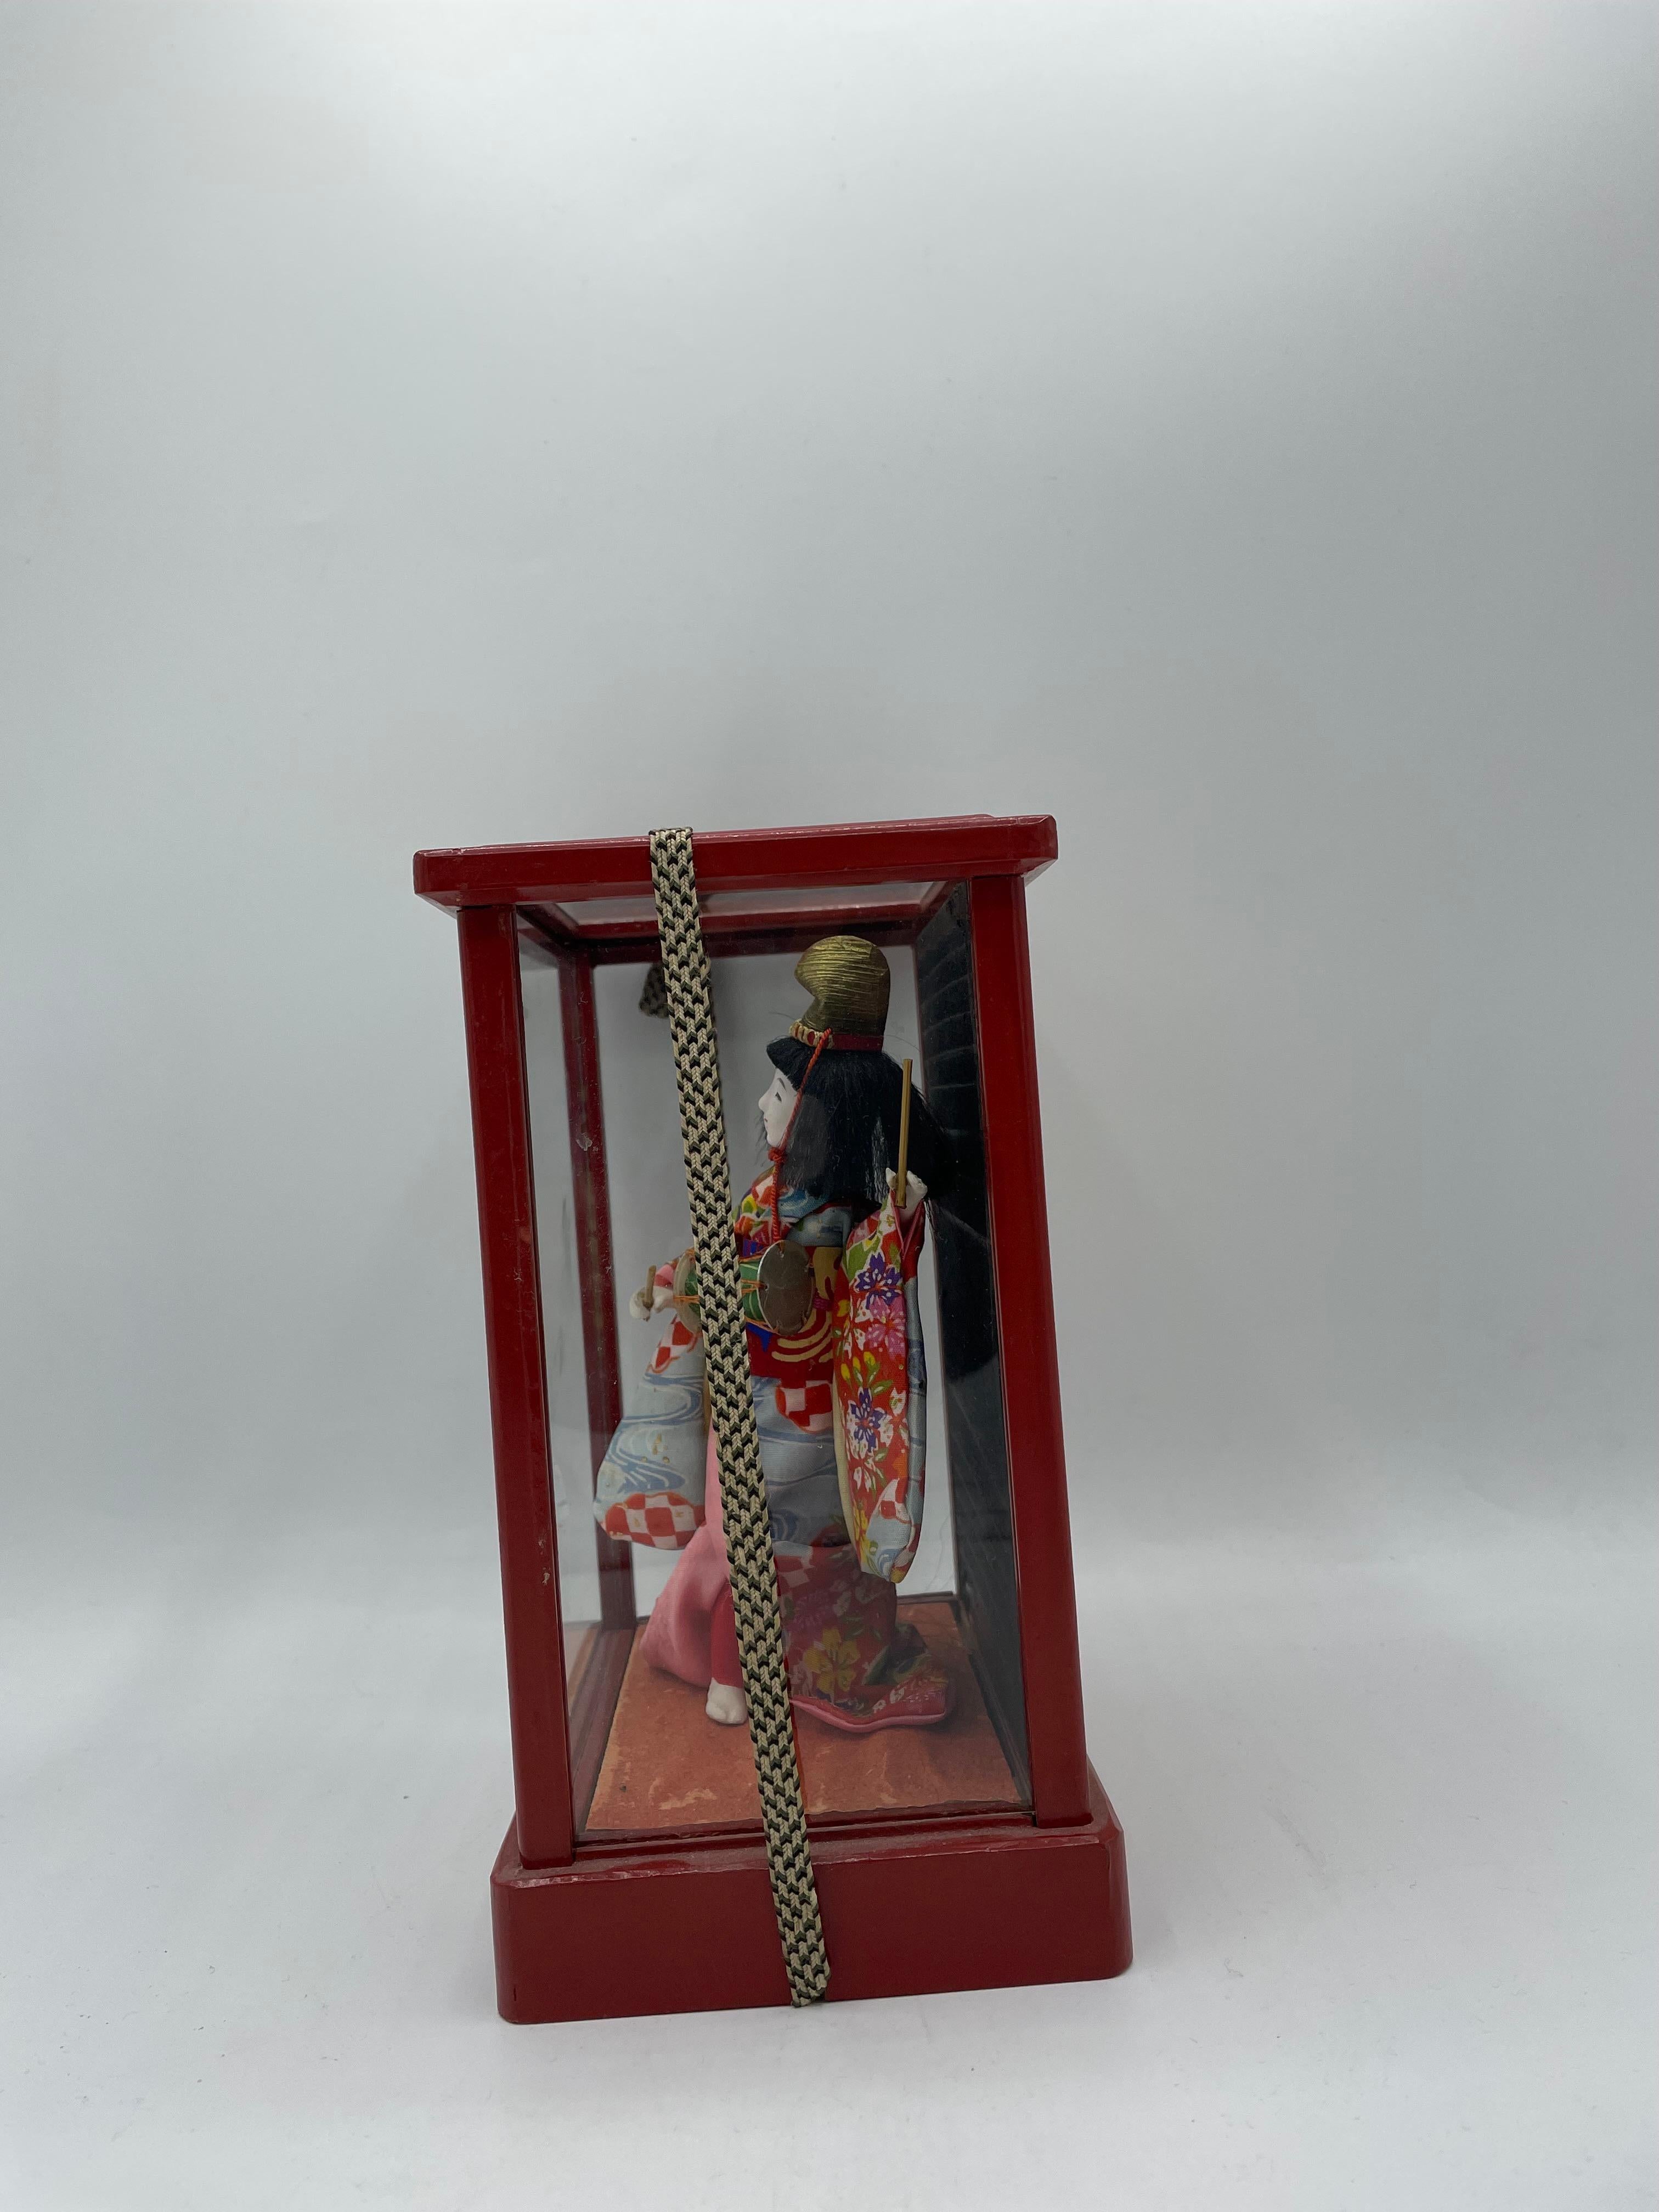 Dies ist eine japanische traditionelle Puppe, die 1970 in der Showa-Ära hergestellt wurde.
Diese Puppe befindet sich in einer Box, die aus Holz und Glas gefertigt ist.
Diese Puppe ist aus Porzellan gefertigt und trägt einen Kimono aus